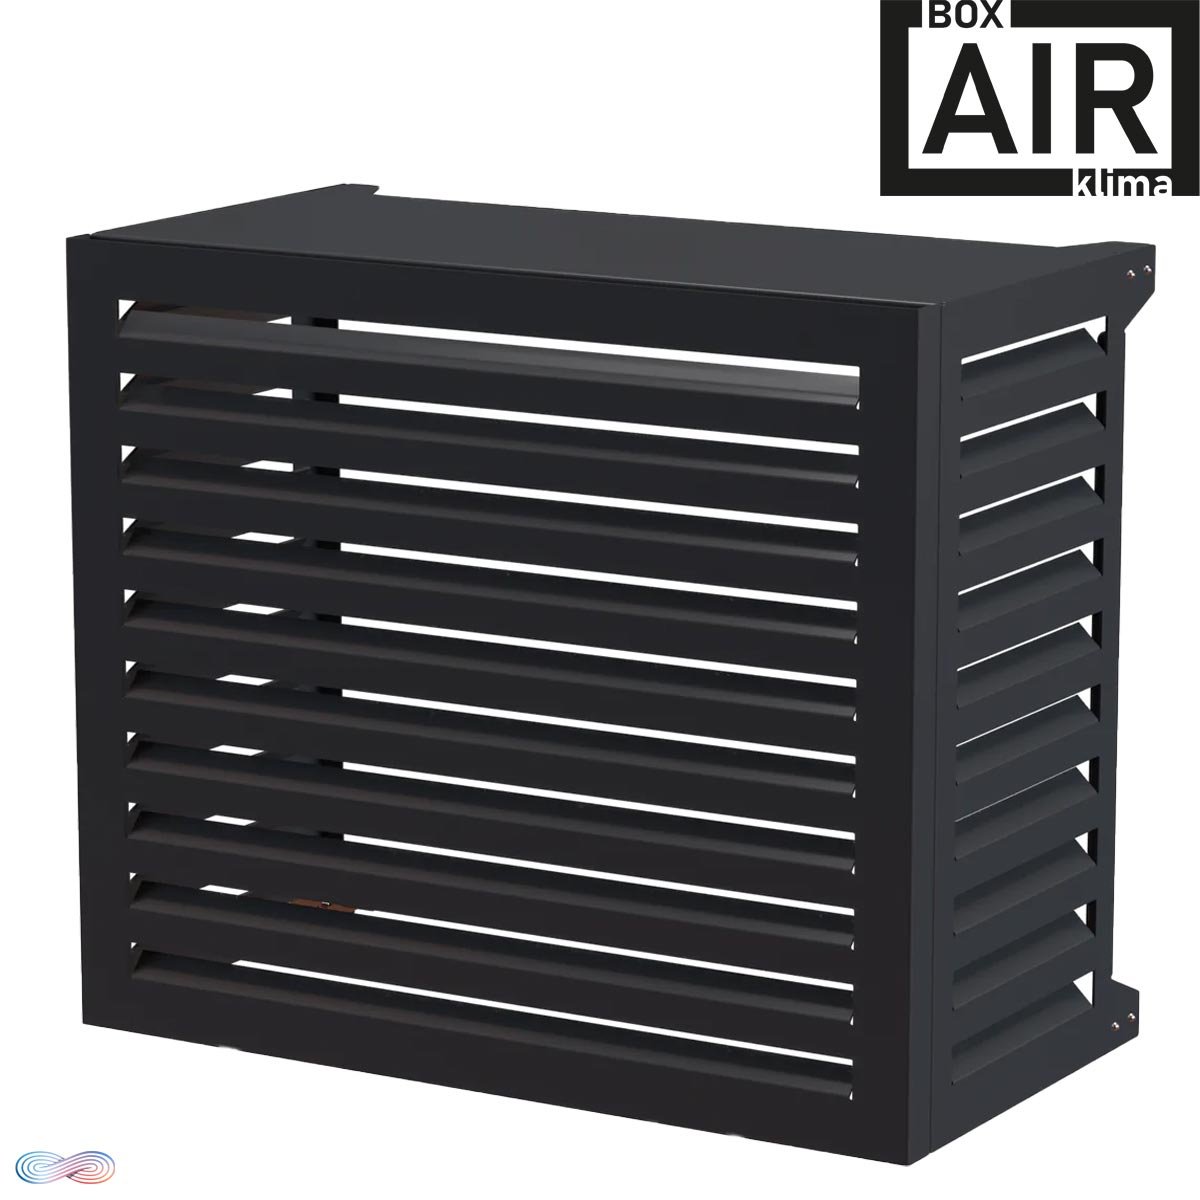 Box Air Klima Cover BLADE Klimaanlagen-Wärmepumpen-Abdeckung... von BOX AIR KLIMA